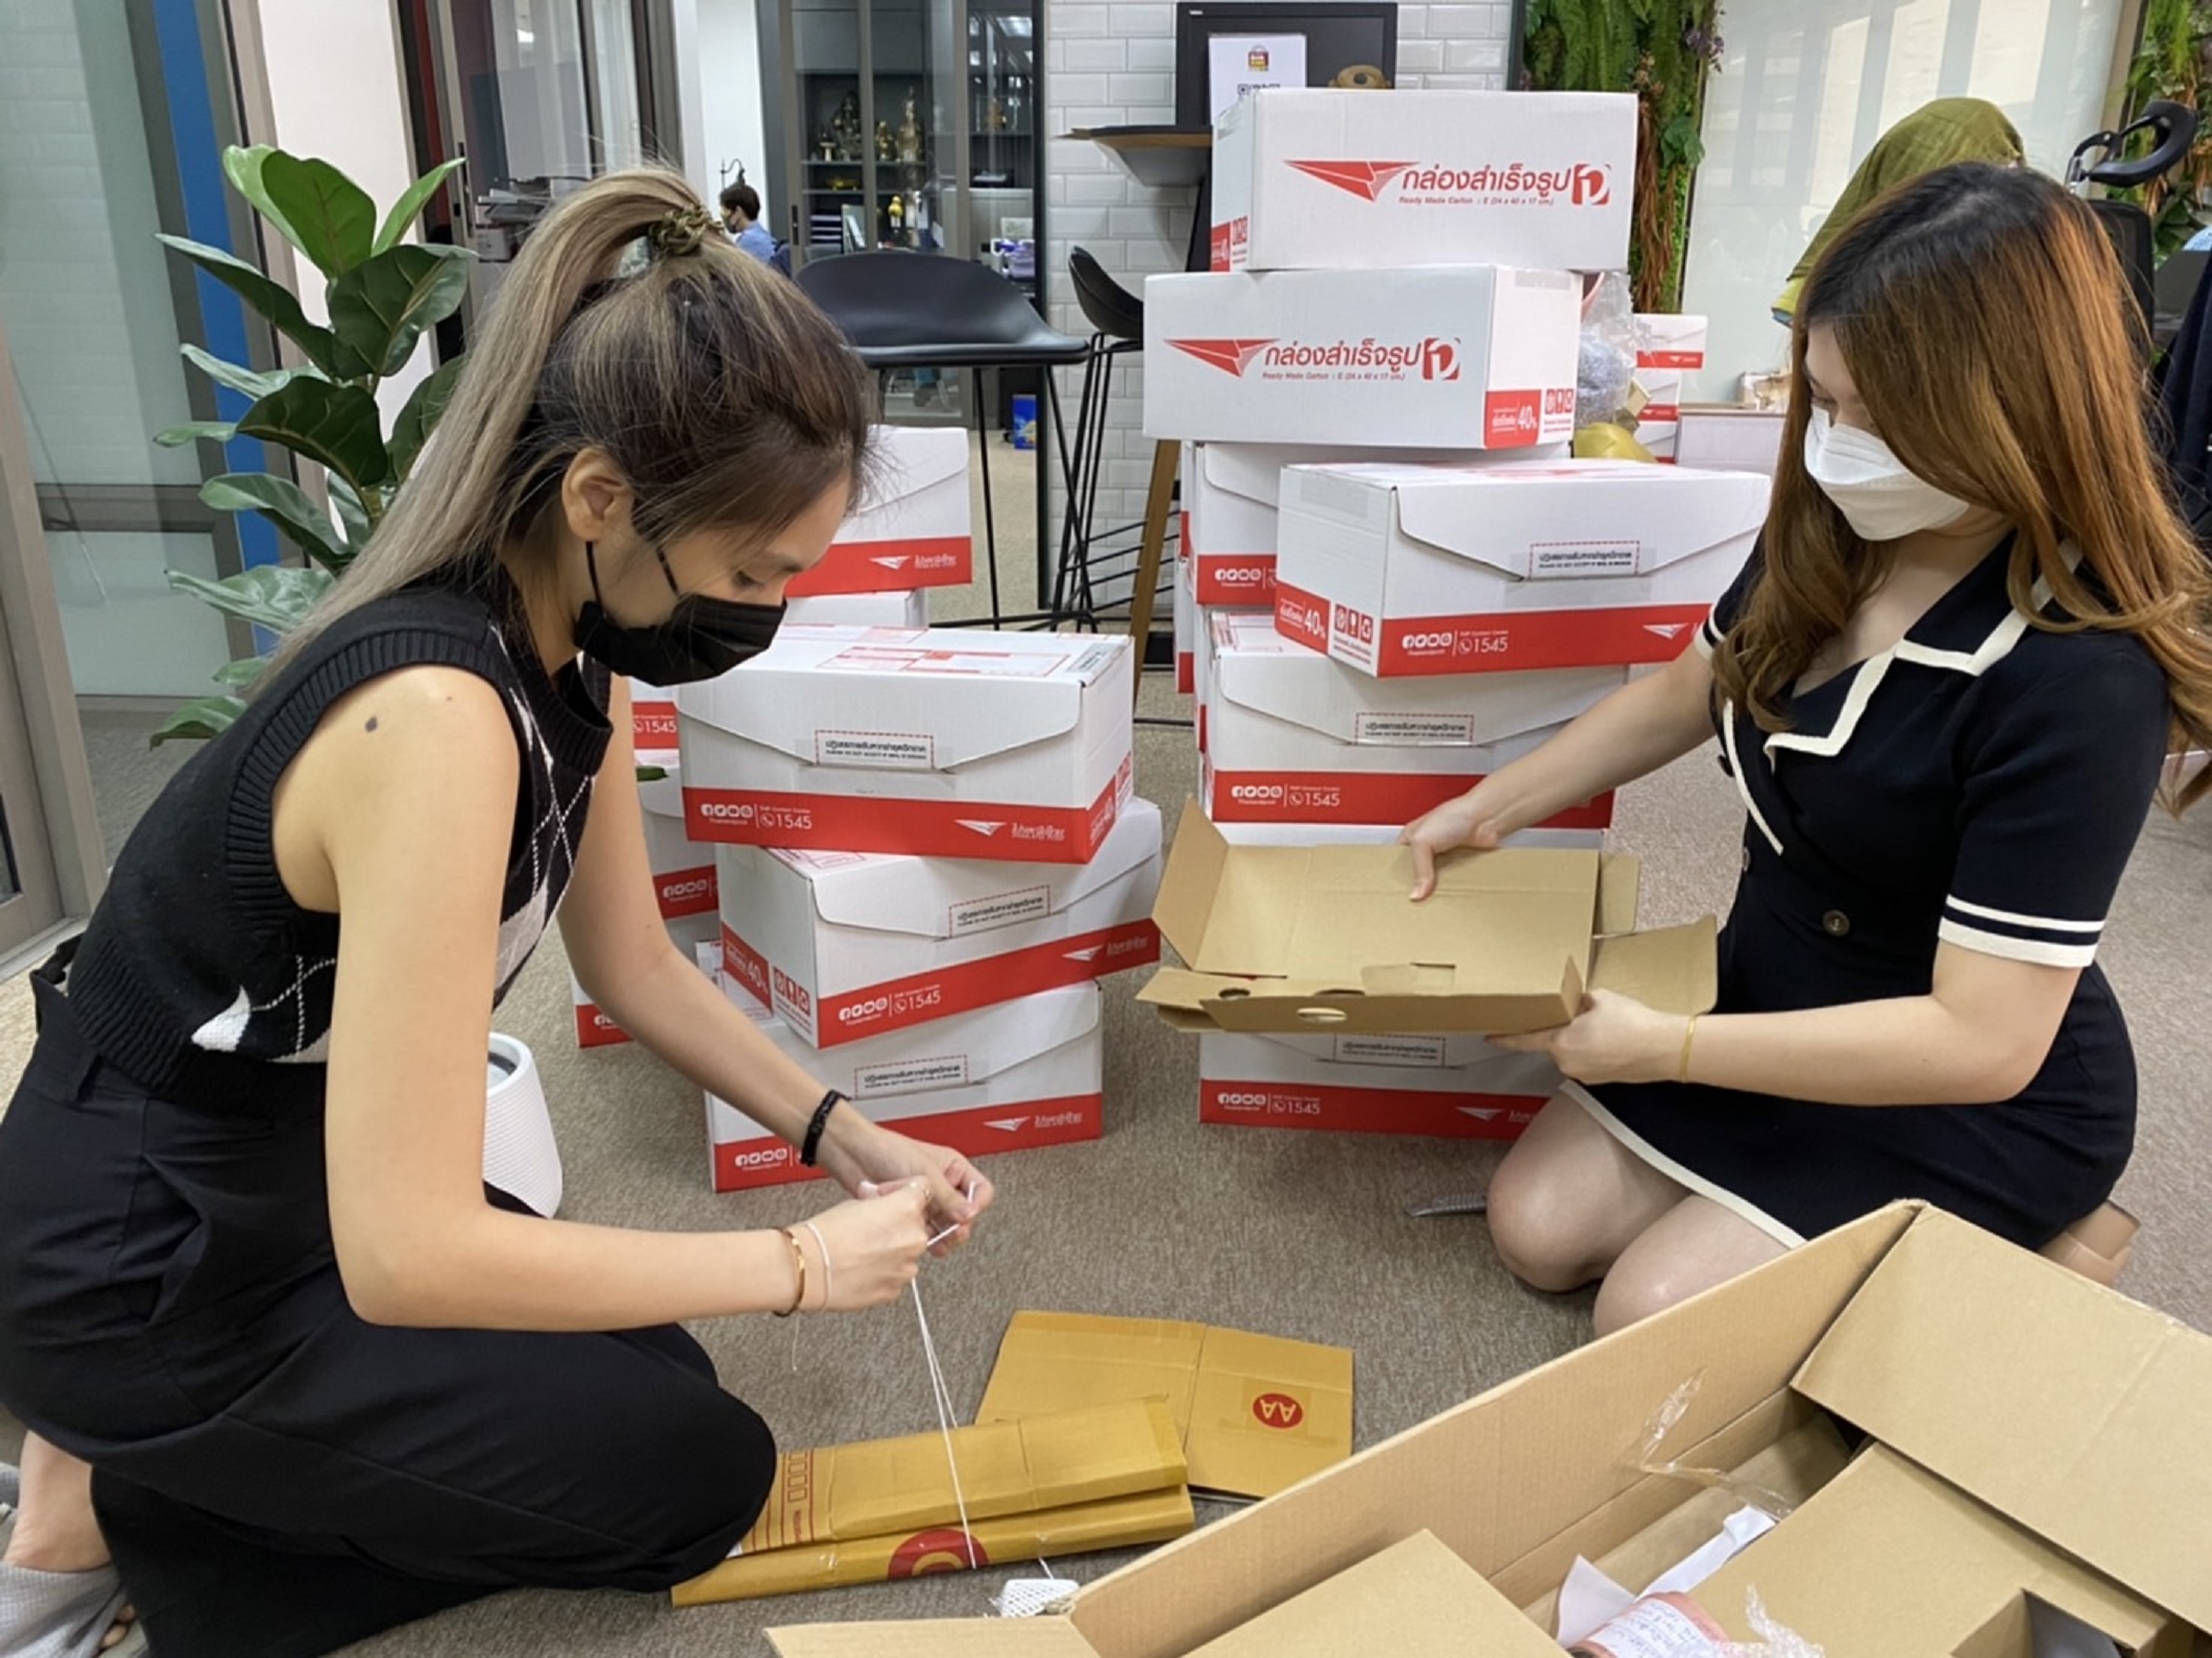 ไปรษณีย์ไทยชวนเปลี่ยนขยะเป็นความคุ้มในแคมเปญ #reBOX นำ กล่อง ซอง กระดาษเก่า มาแยก แลกรางวัลที่พักสุดหรู